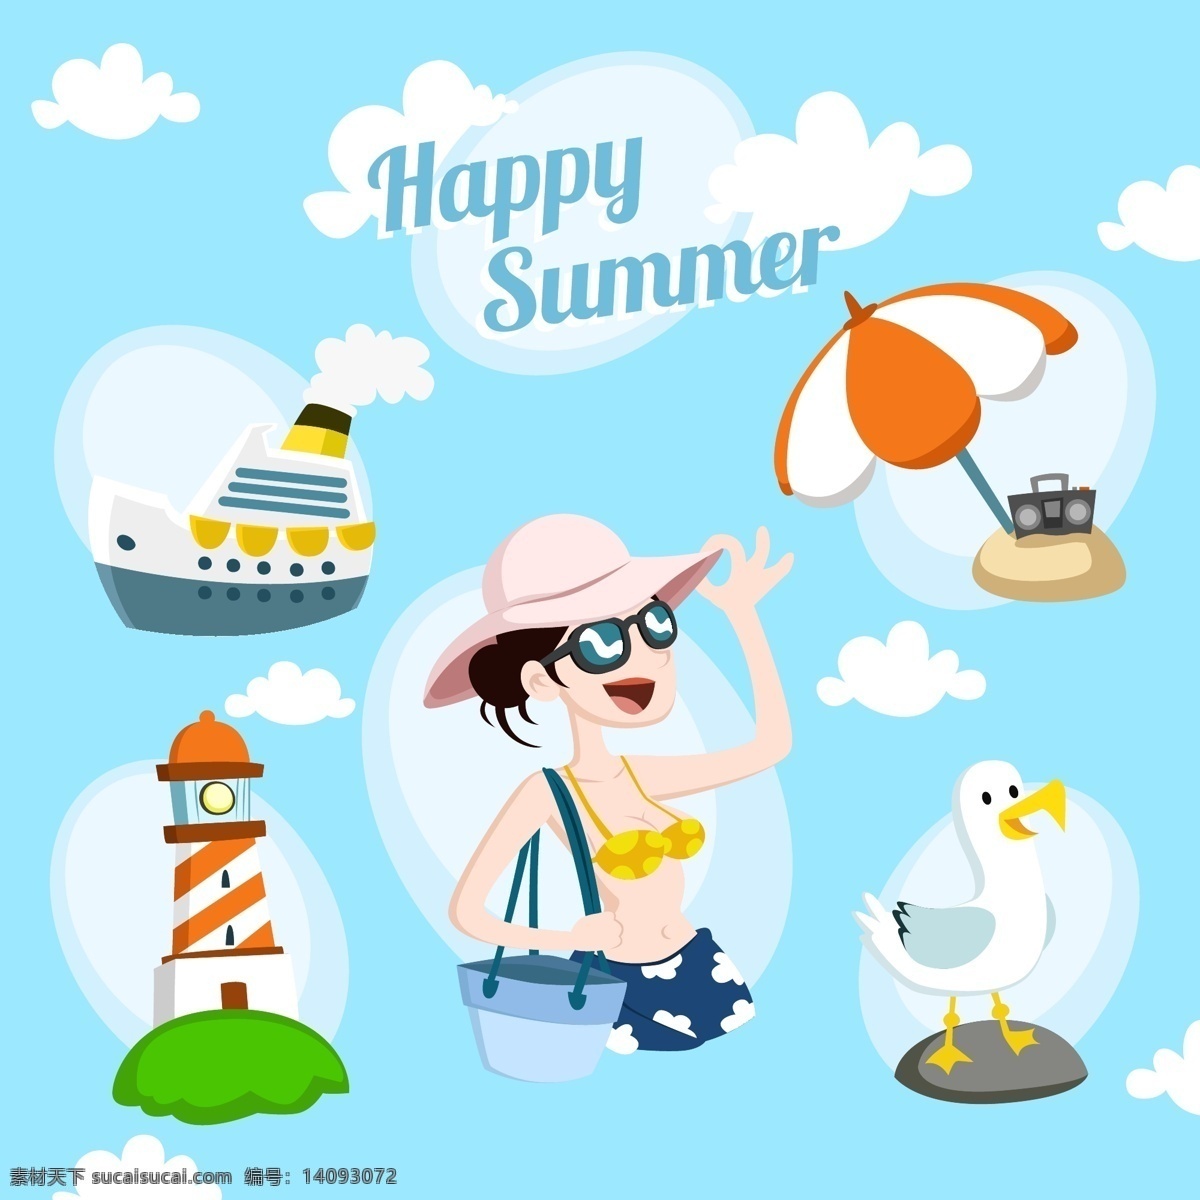 夏日度假元素 夏日度假 夏季旅游 轮船 游轮 沙滩遮阳伞 灯塔 海鸥 女性 太阳镜 矢量素材 白色